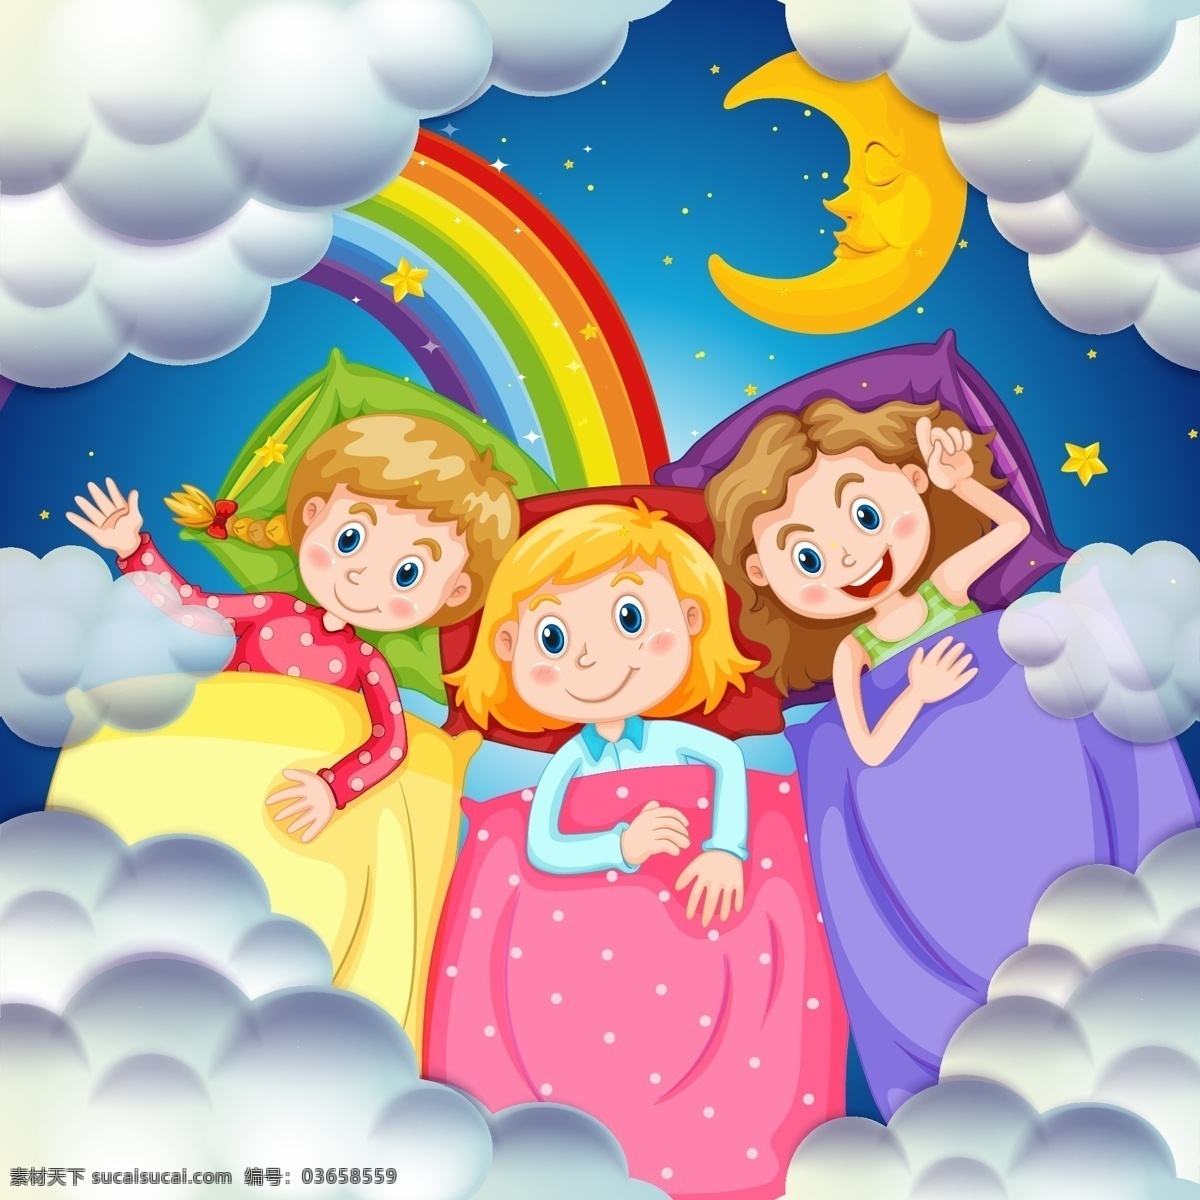 卡通 可爱 孩子 插画 彩虹 月亮 云朵 睡觉